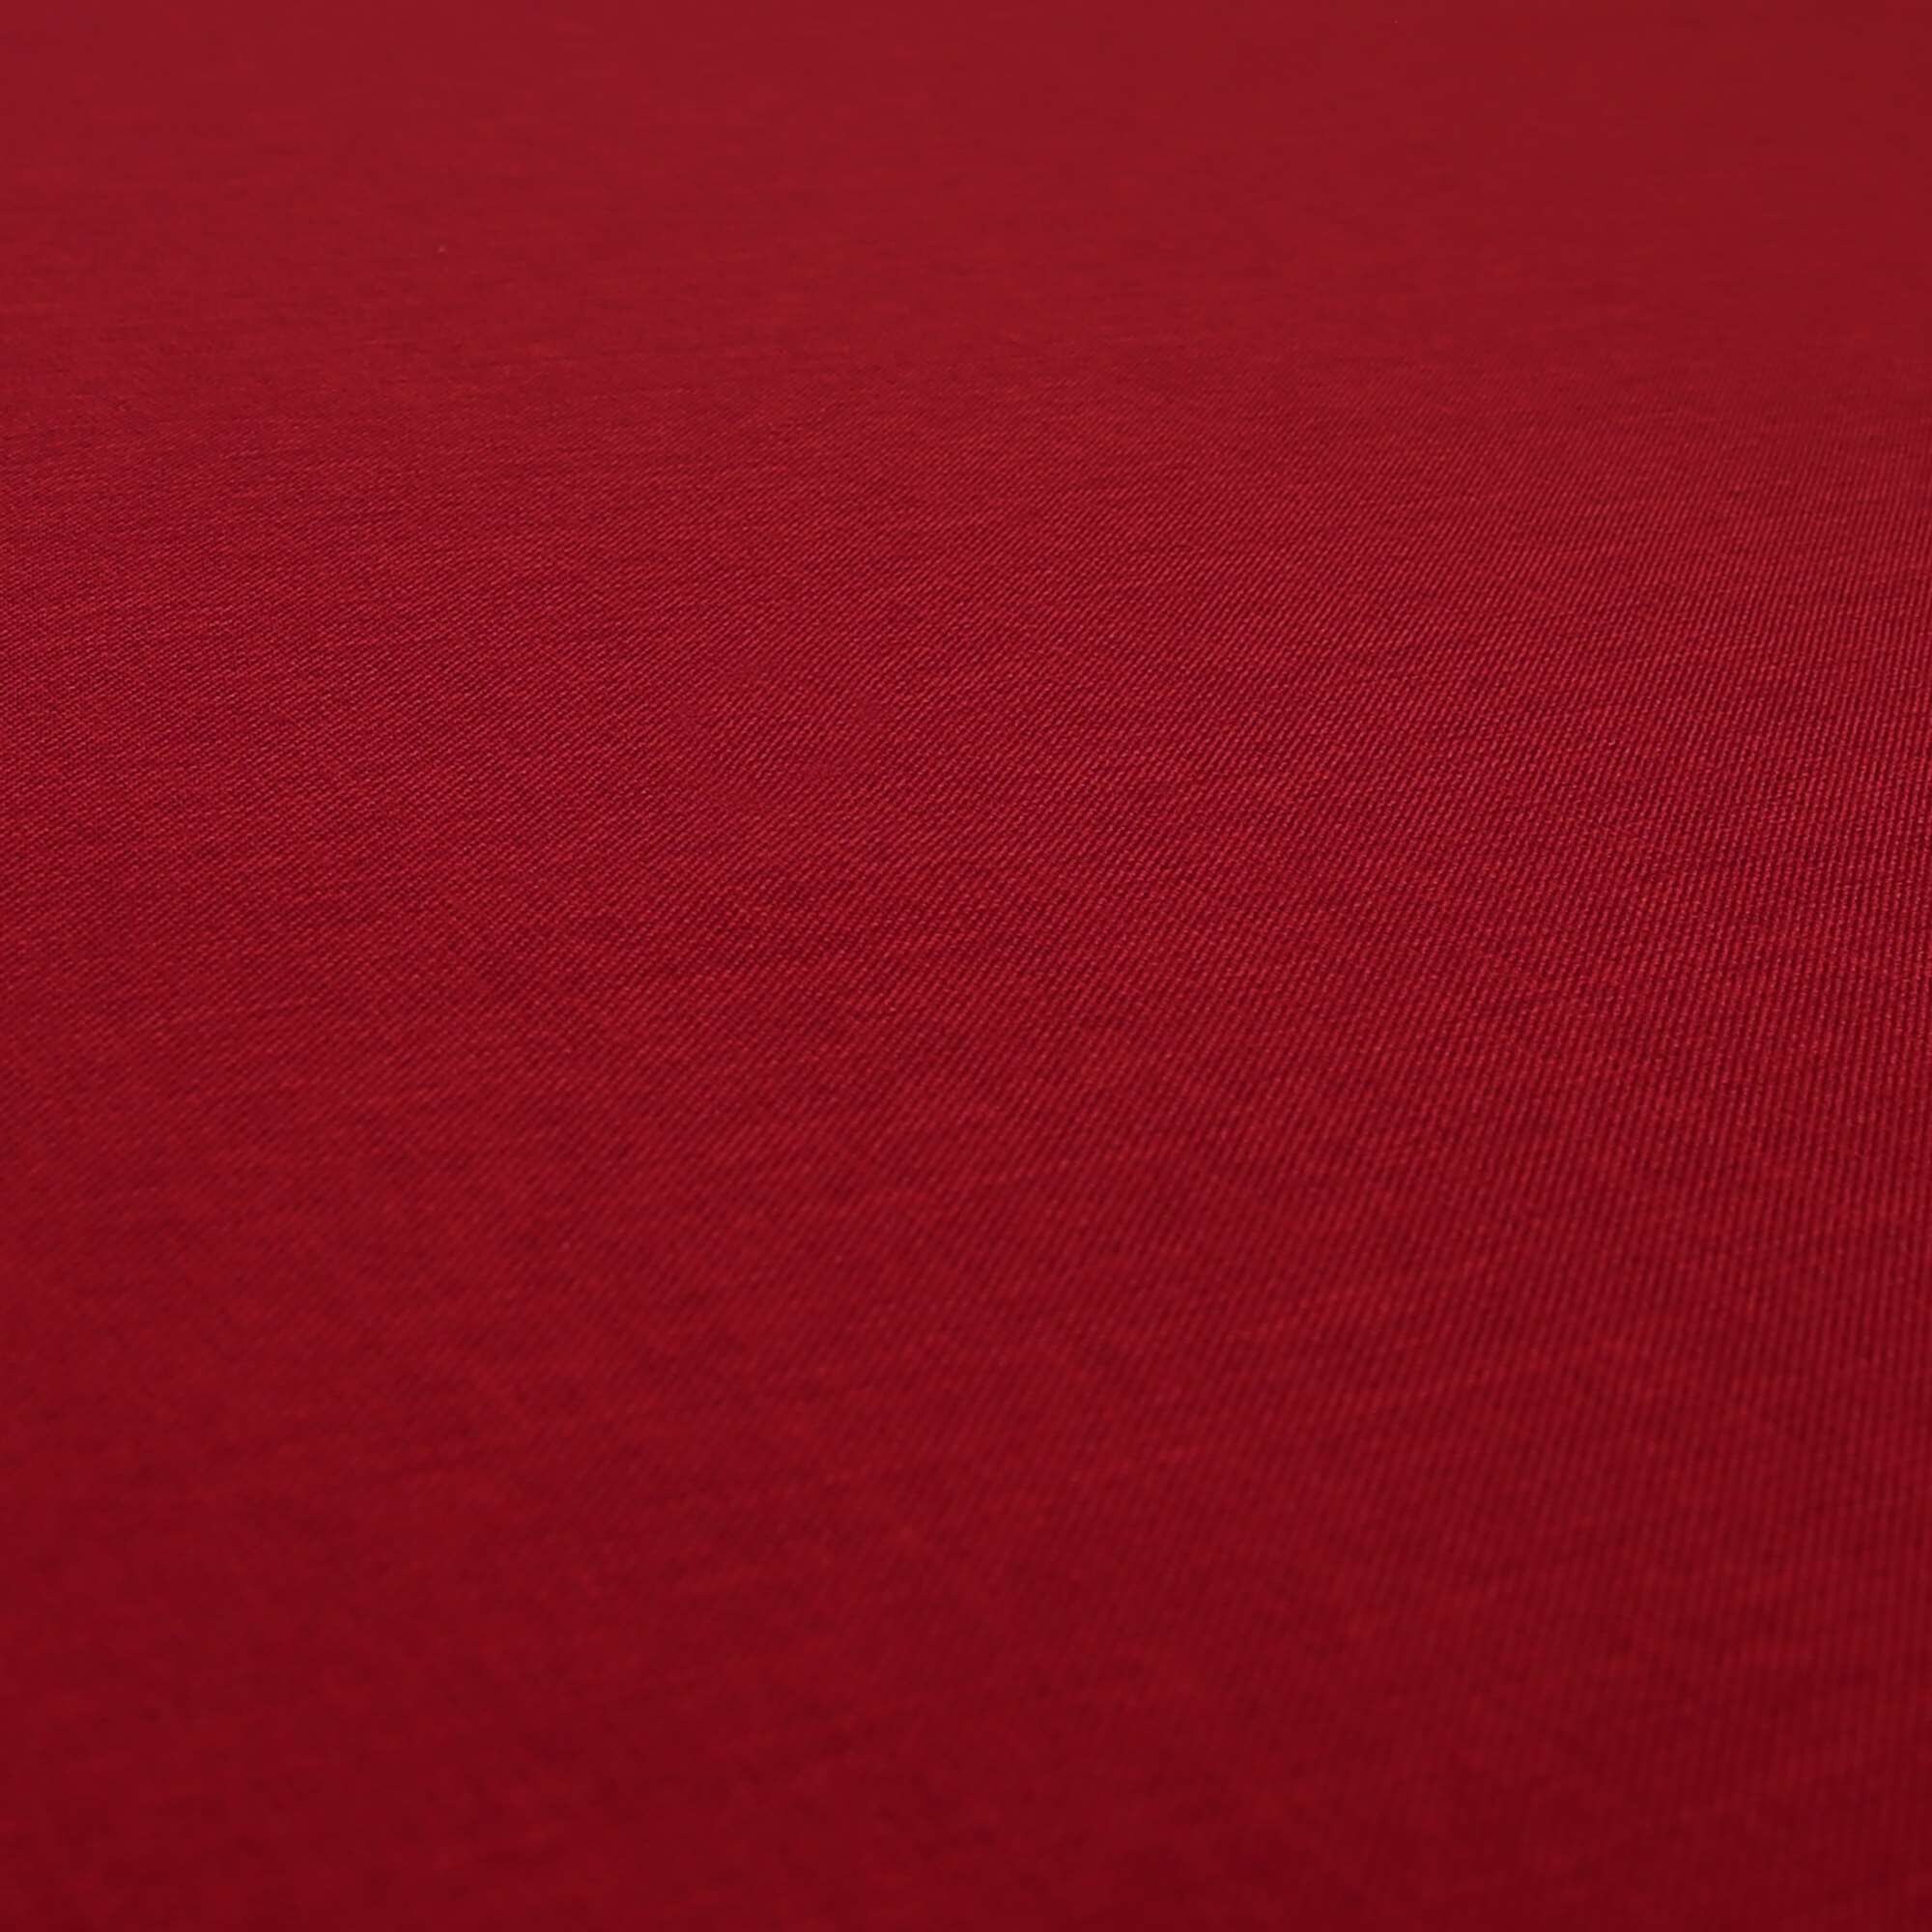 Hard Wearing Linen Effect Like Chenille Upholstery Plain Red - Etsy UK